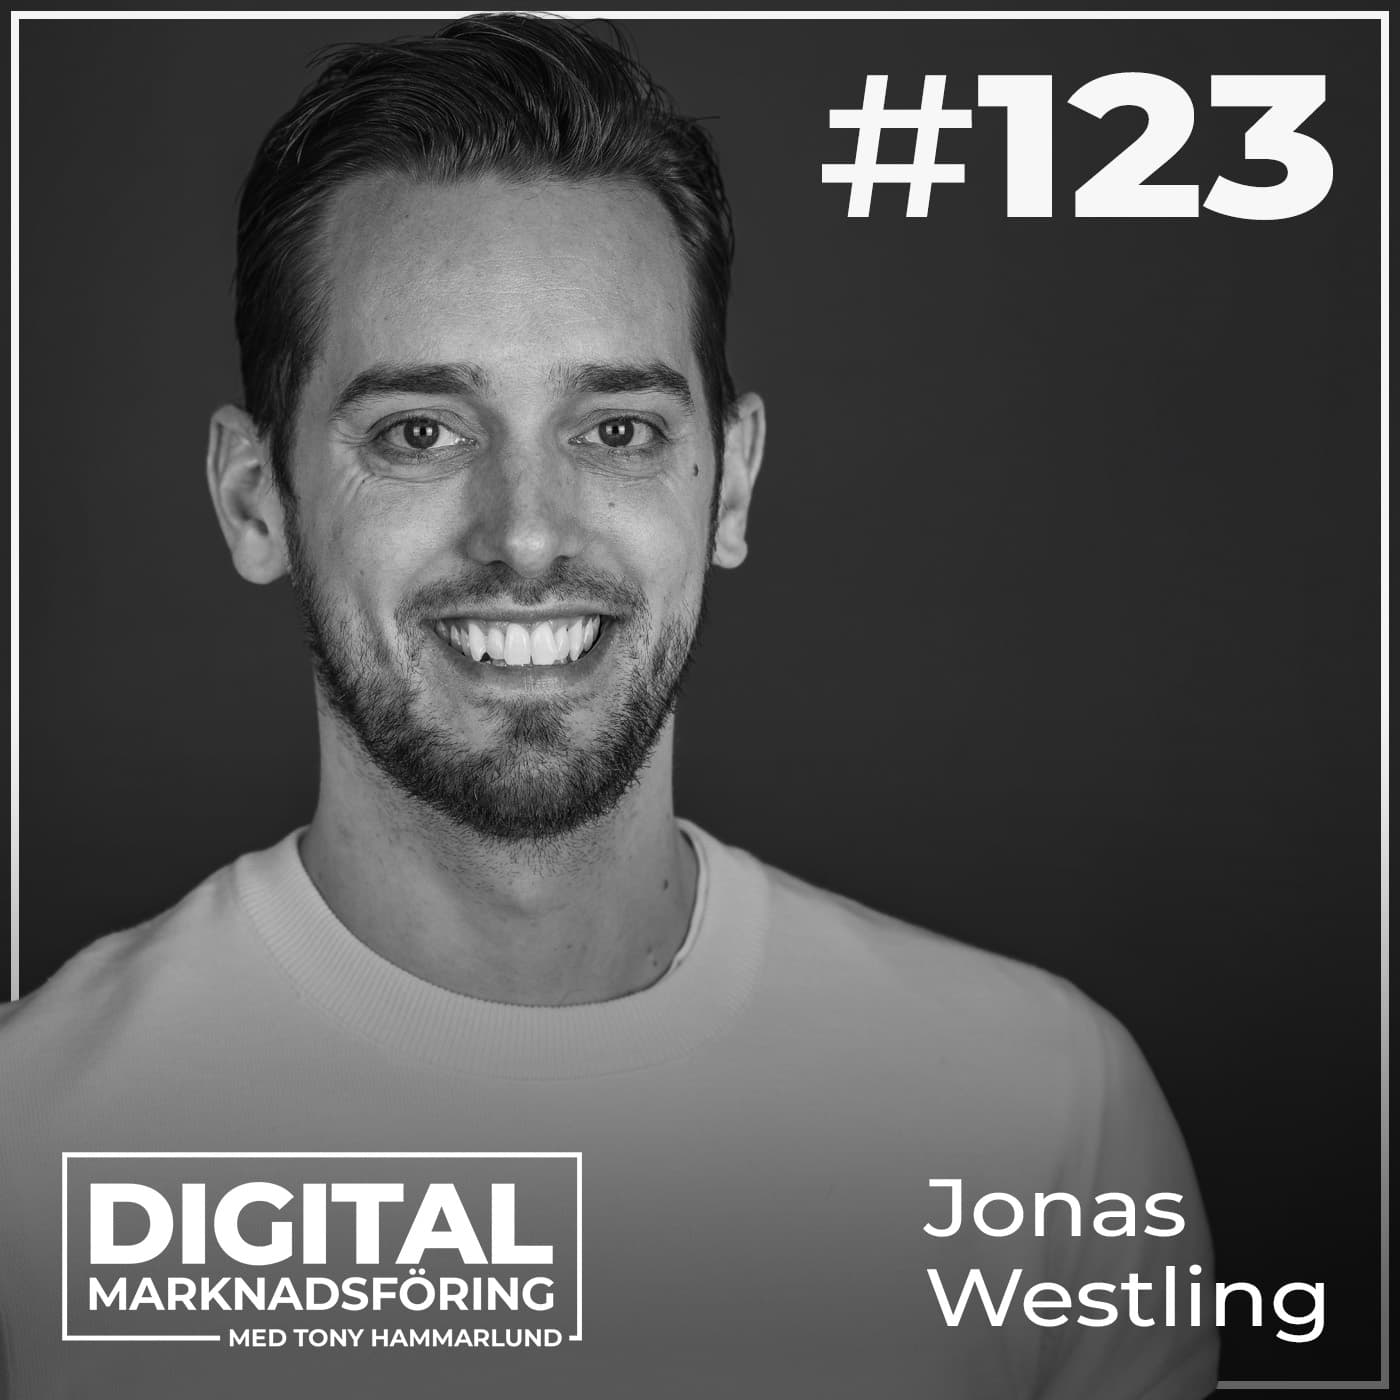 Trender, strategi och receptet för influencer marketing 2024 – Jonas Westling #123